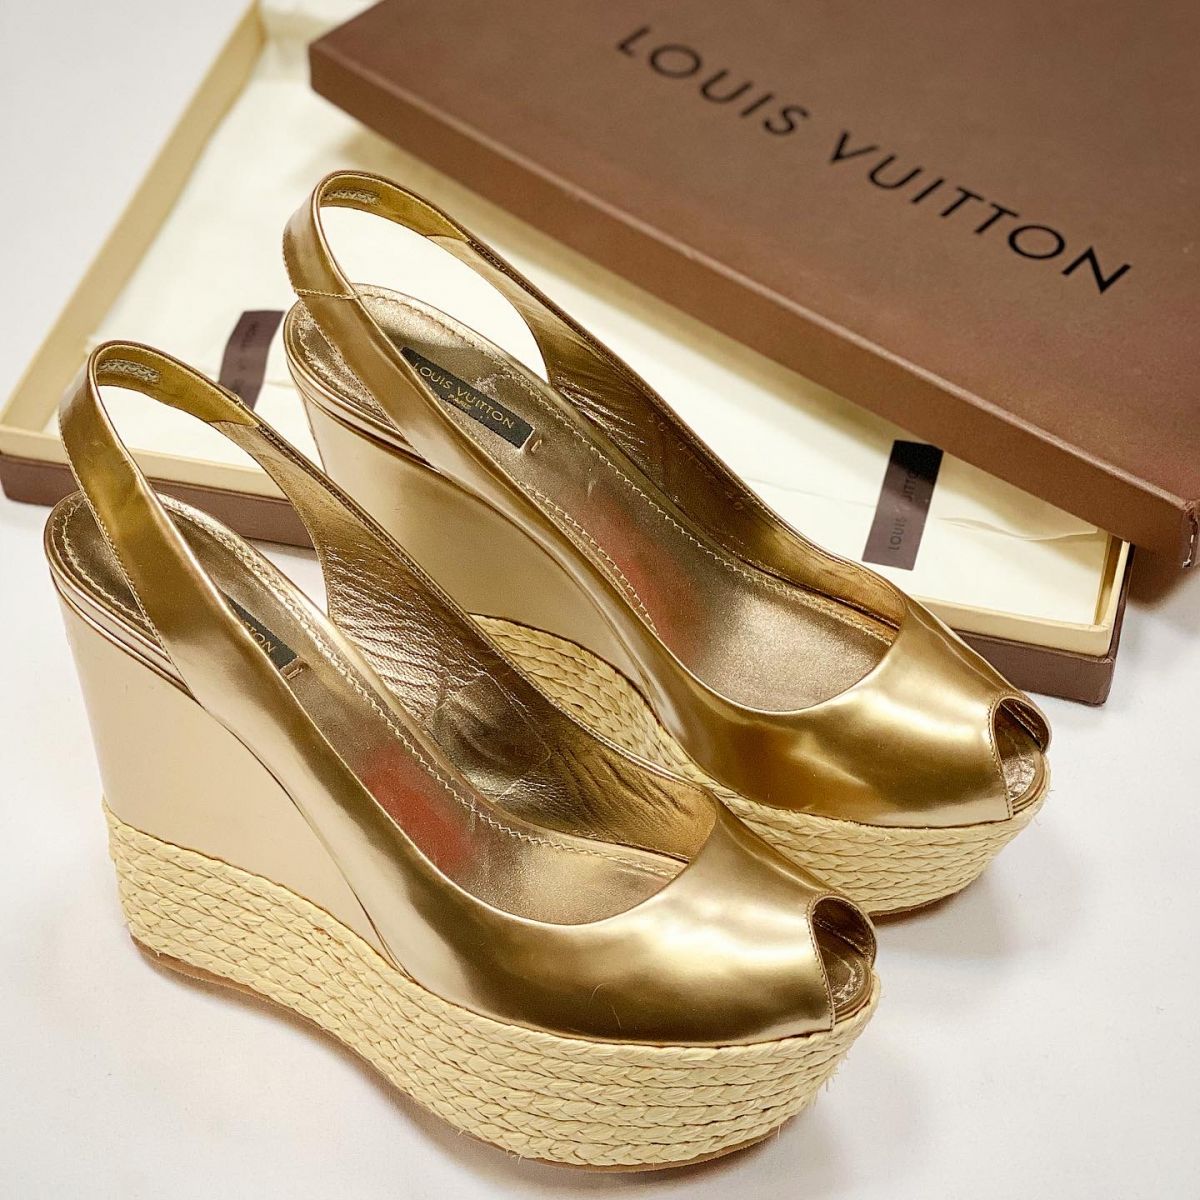 Босоножки Louis Vuitton размер 40 цена 12 308 руб 